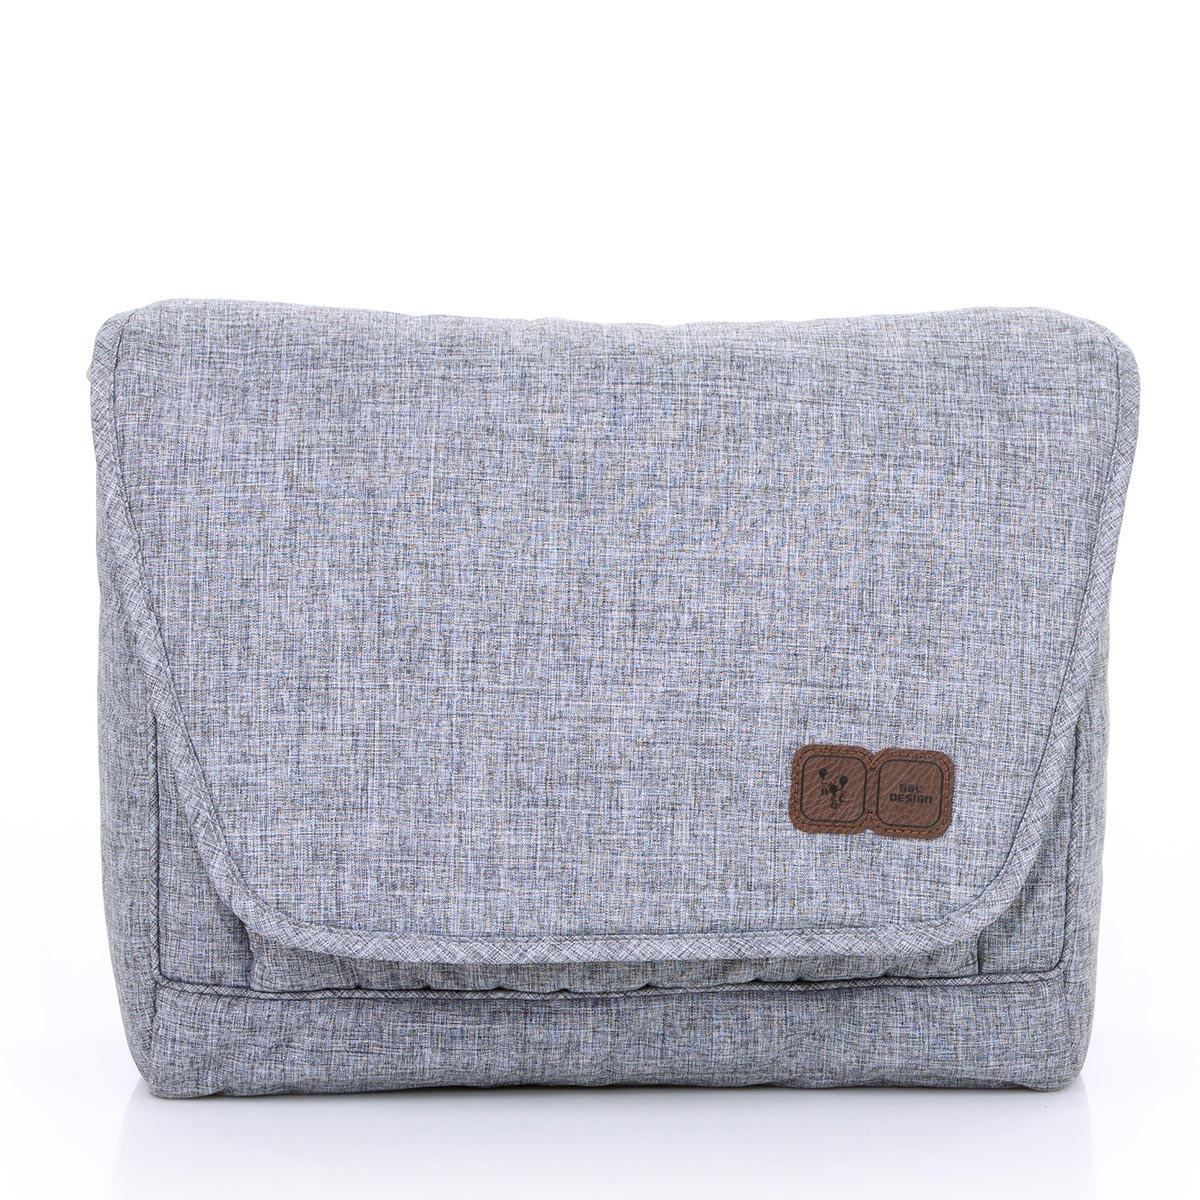 Bolsa Maternidade Fashion Bag Diversos Compartimentos Graphite Grey - Abc Design